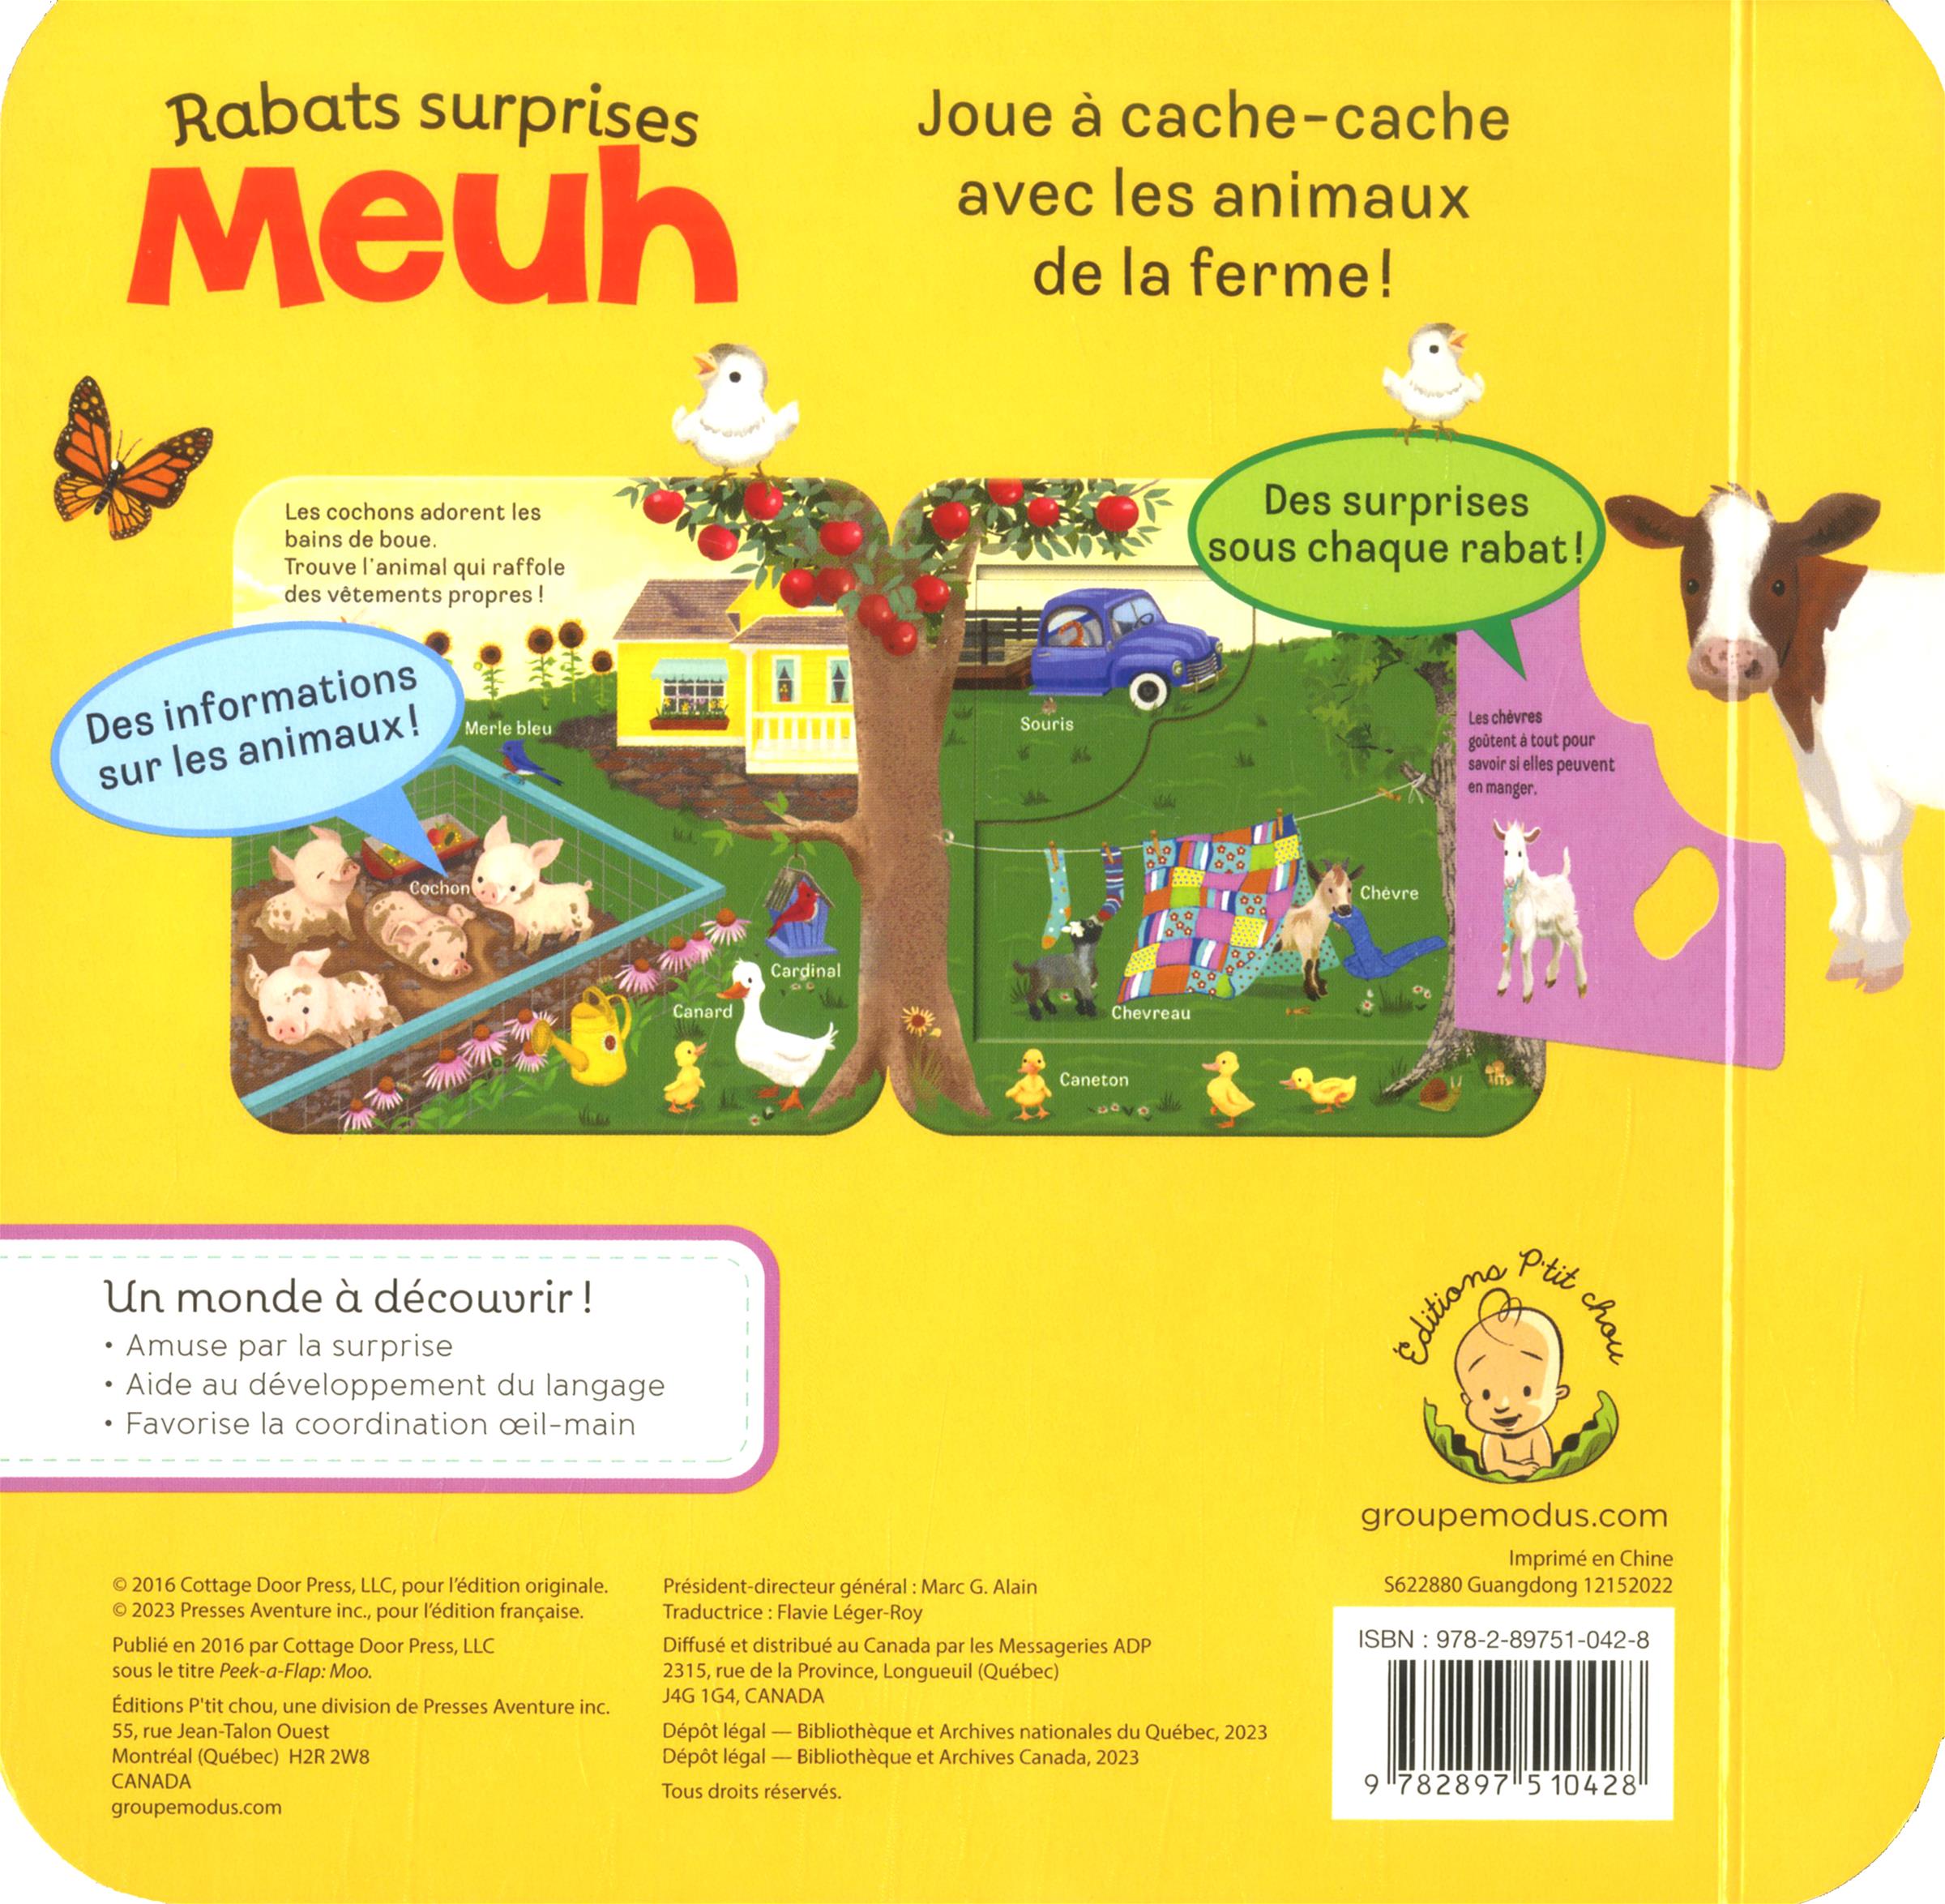 Petit lutin - Éditions P'tit chou - Presses Aventure